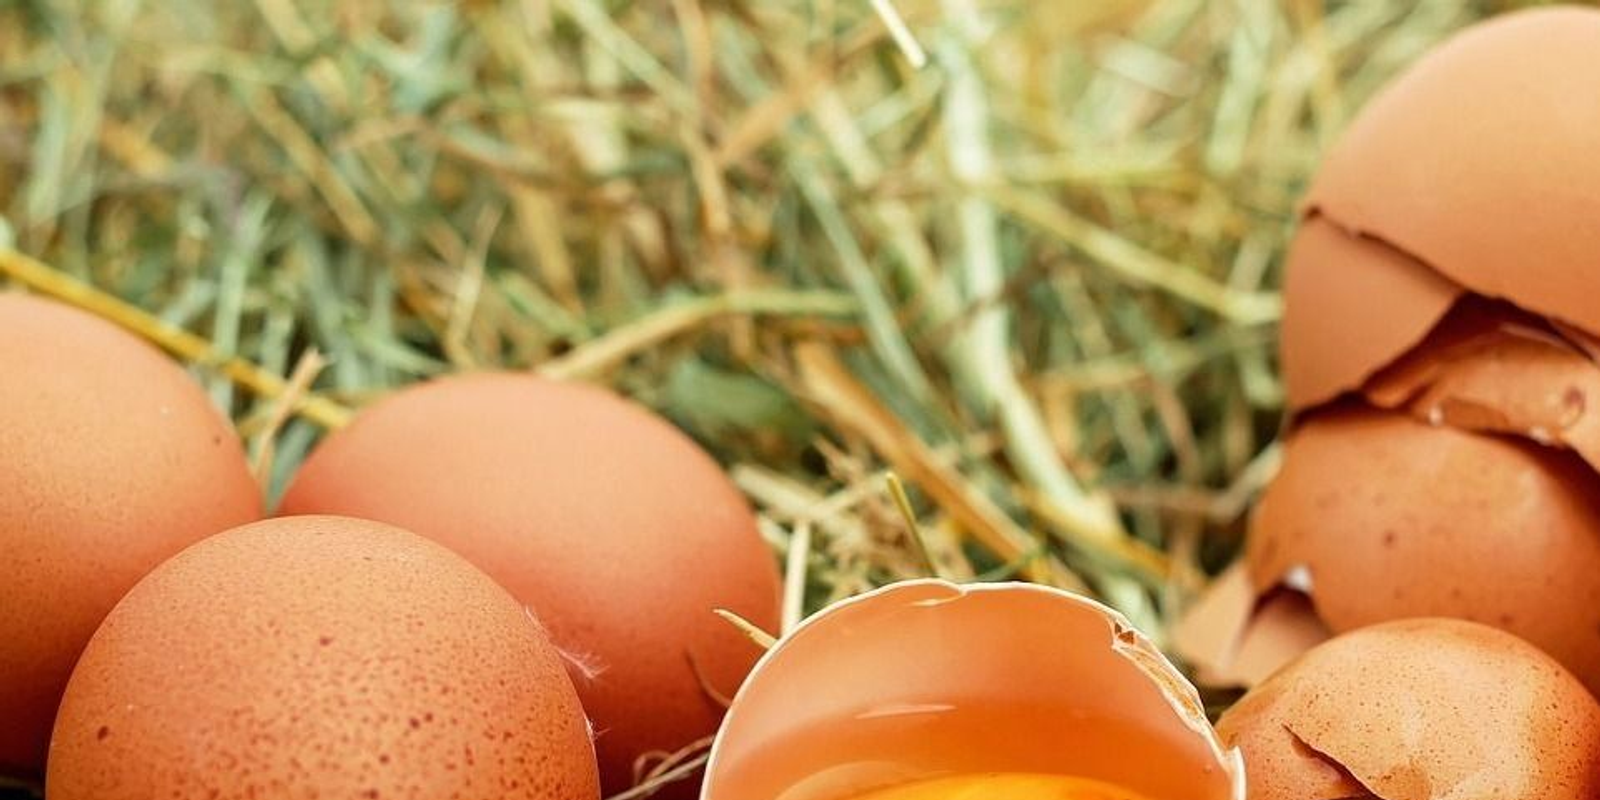 Huevos sanos: 9 razones por las que deberías comer huevos con regularidad, no sólo durante Semana Santa